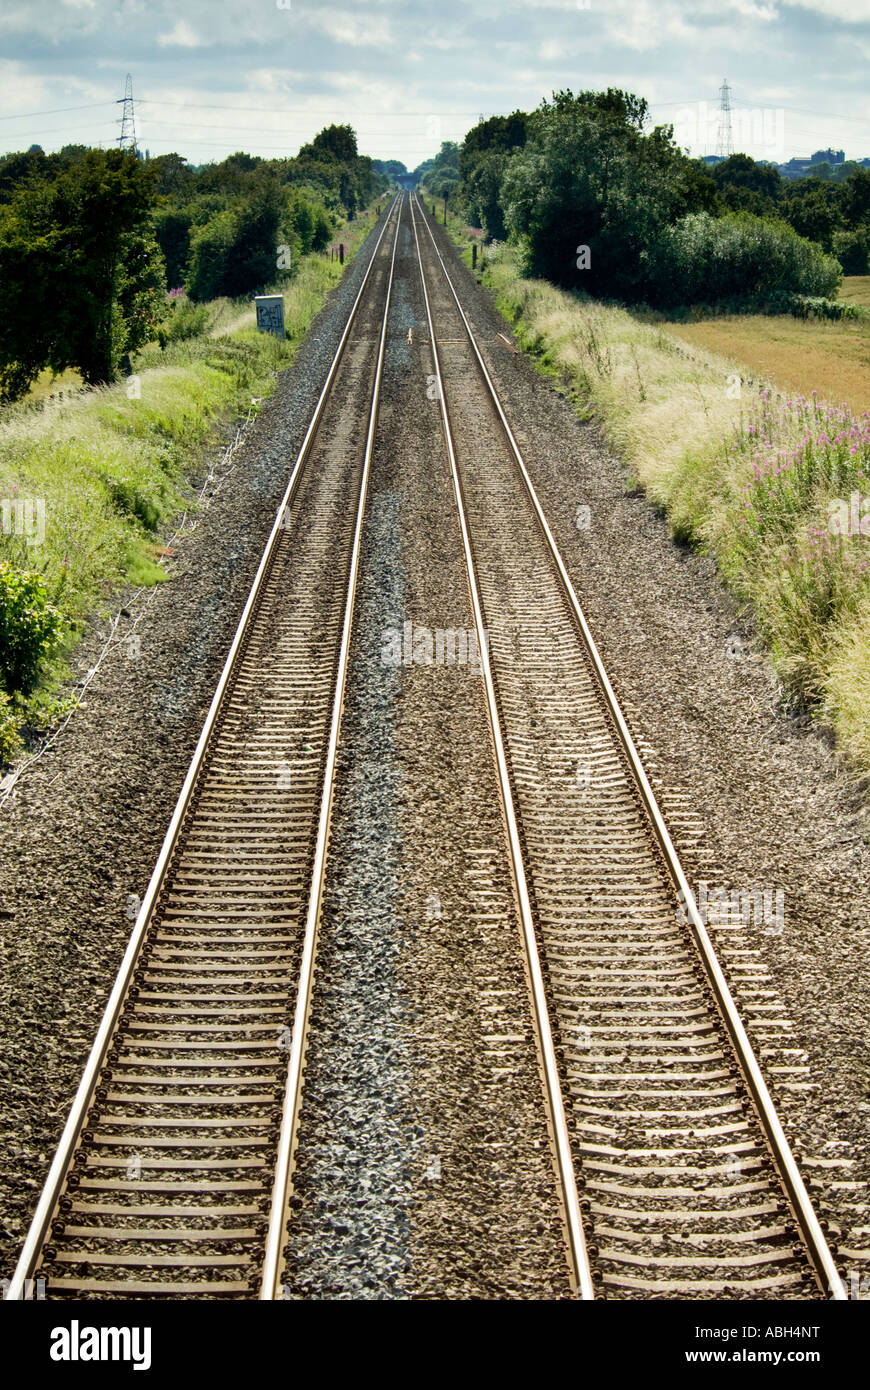 La convergence des lignes de chemin de fer disparaissent dans la distance Banque D'Images